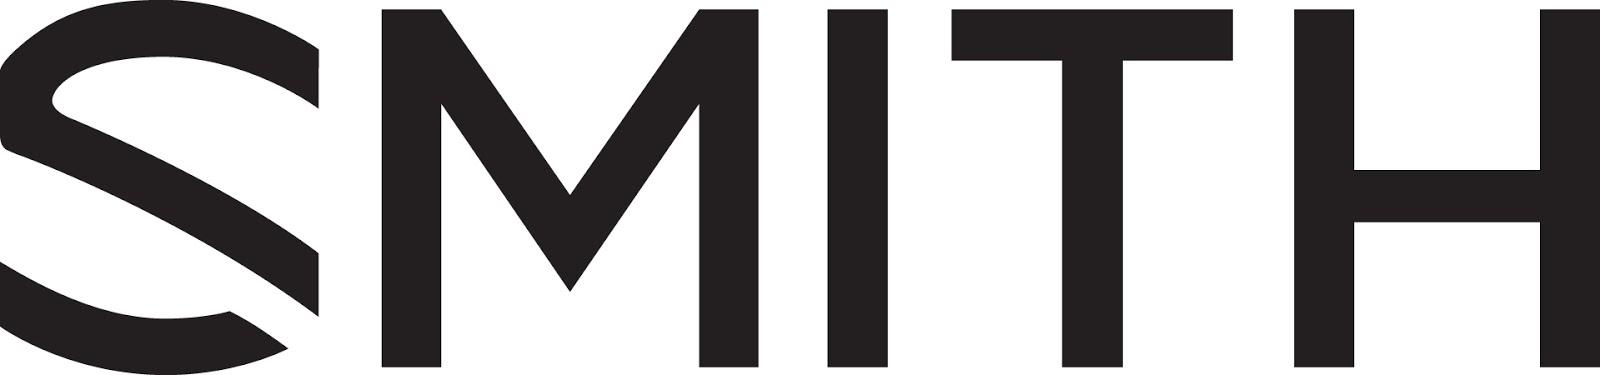 Smith Logo - Smith Logo